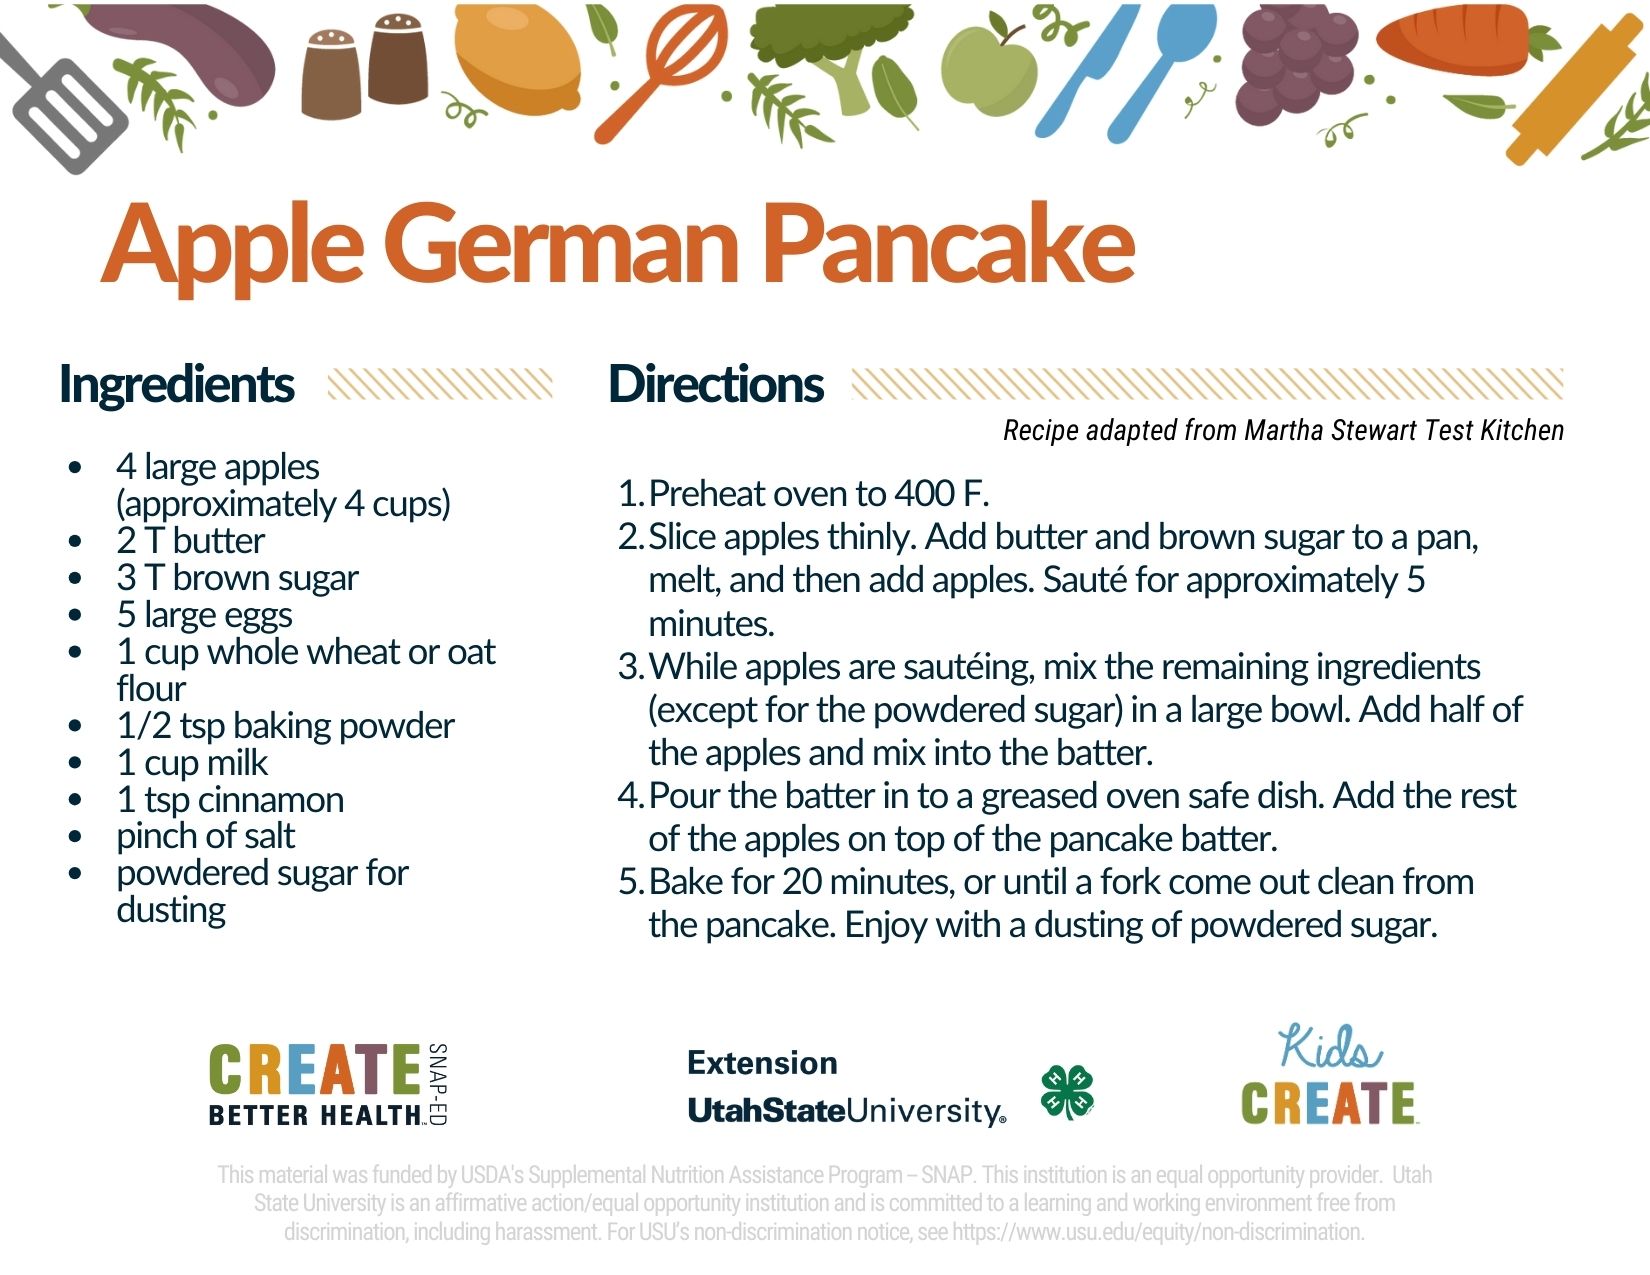 Apple German pancake recipe